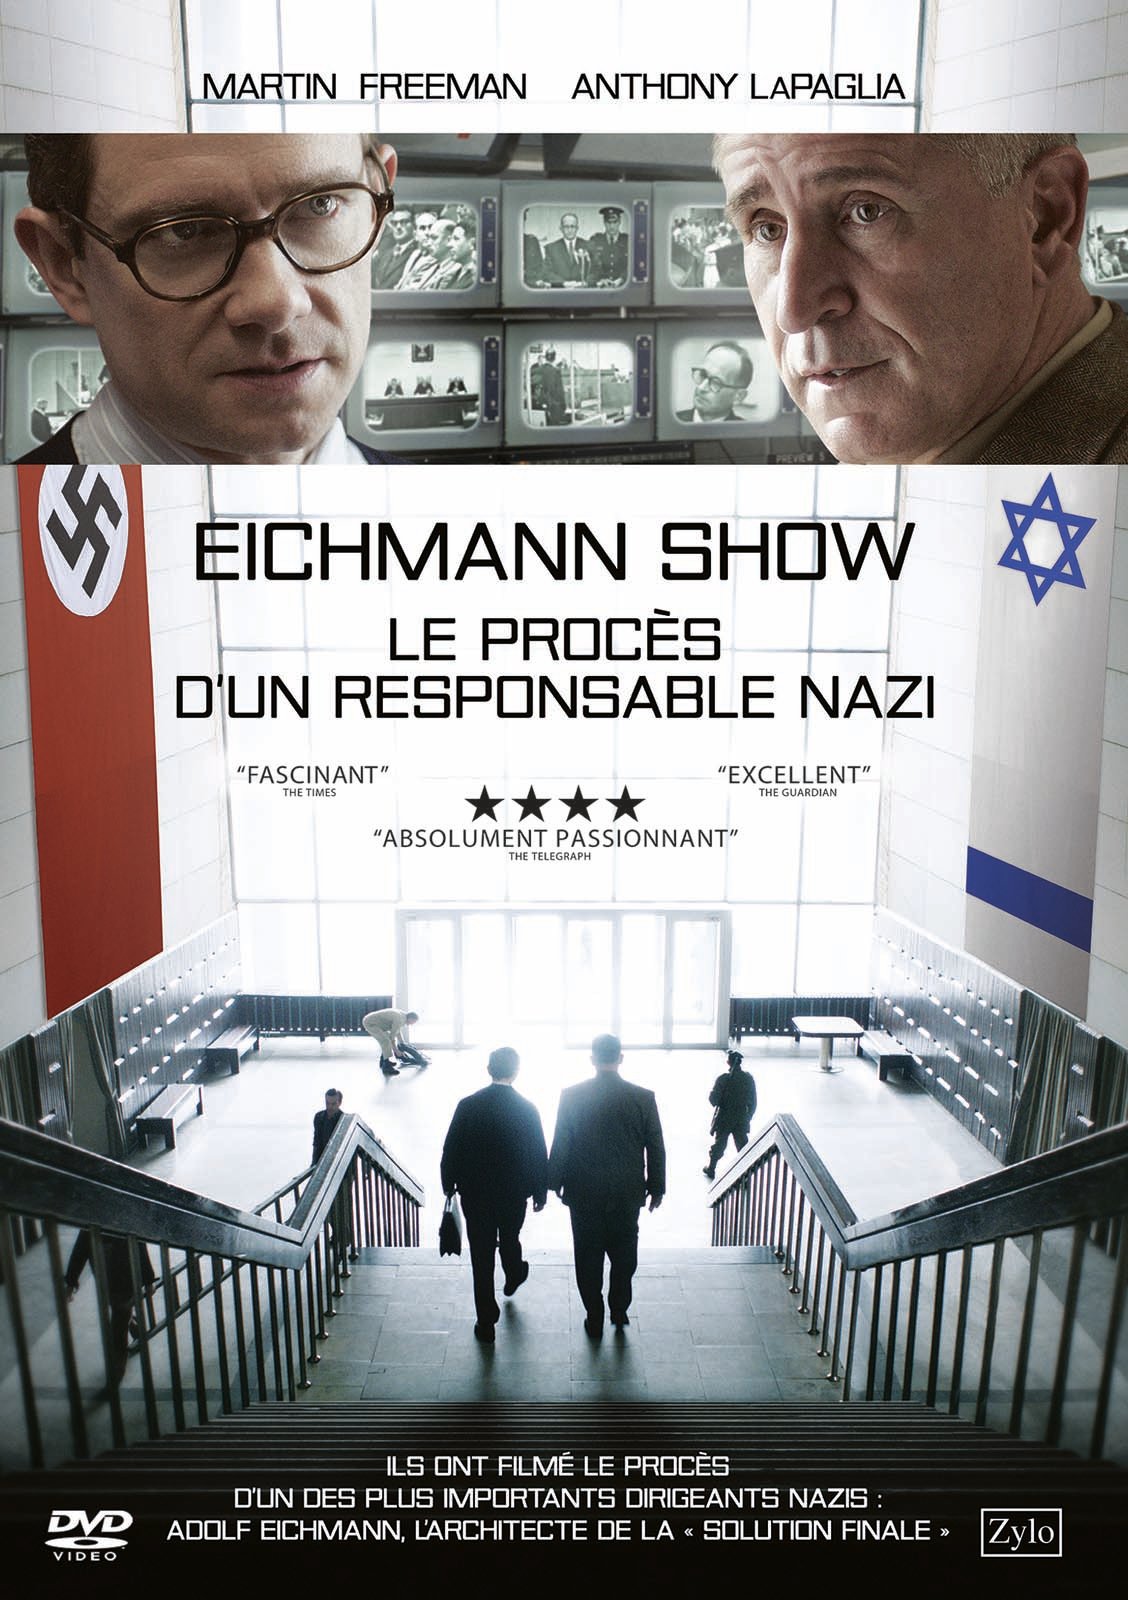 Le Procès Eichmann en DVD : The Eichmann Show - AlloCiné